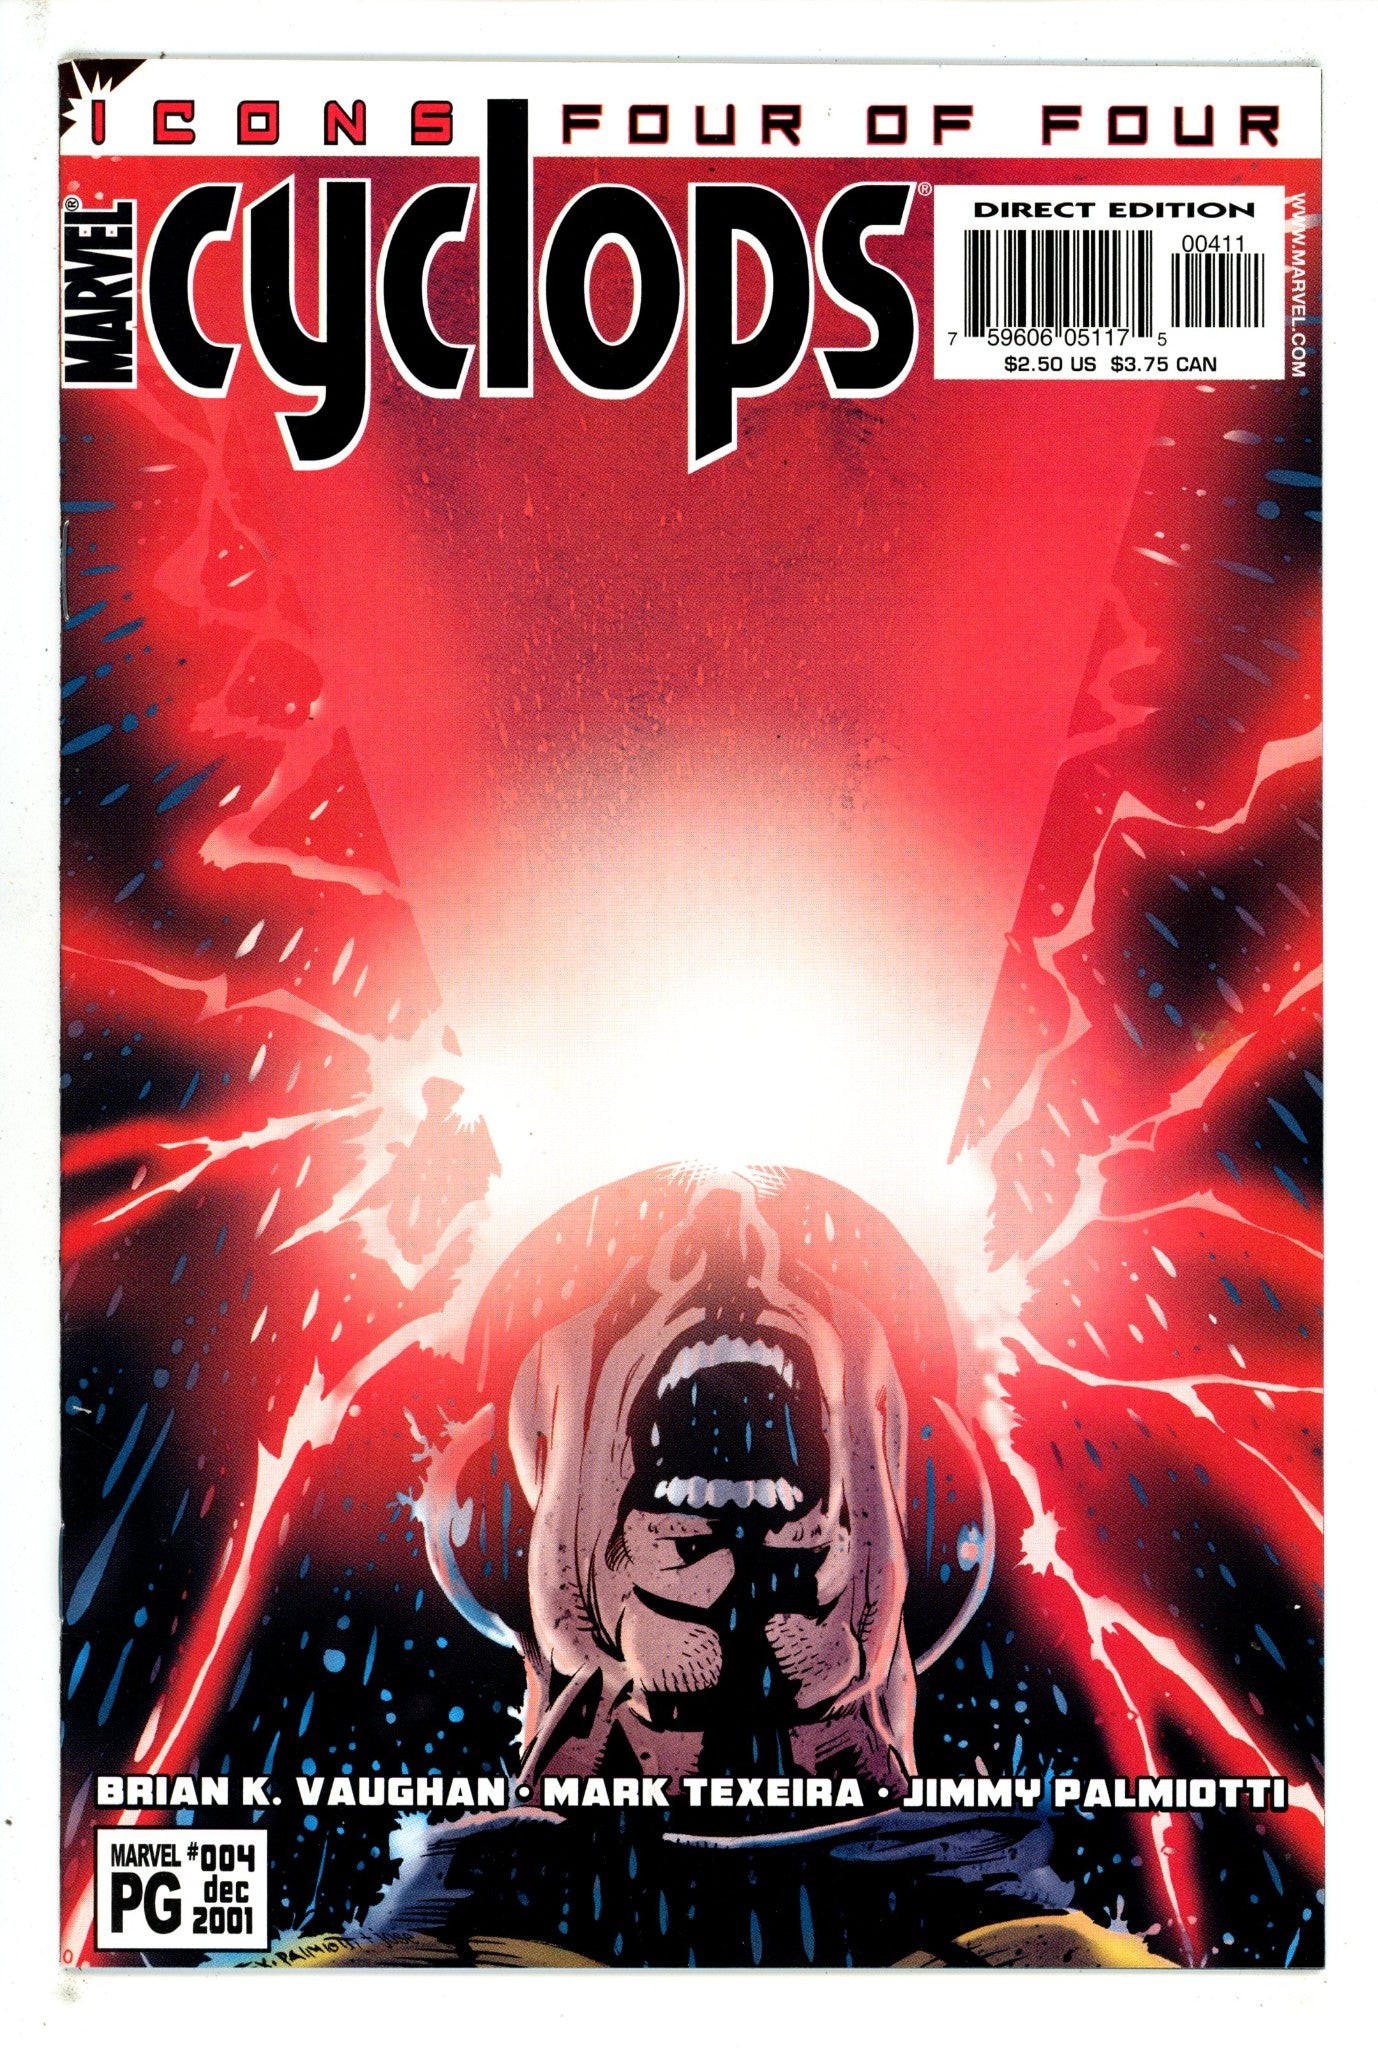 Cyclops Vol 1 4 (2001)